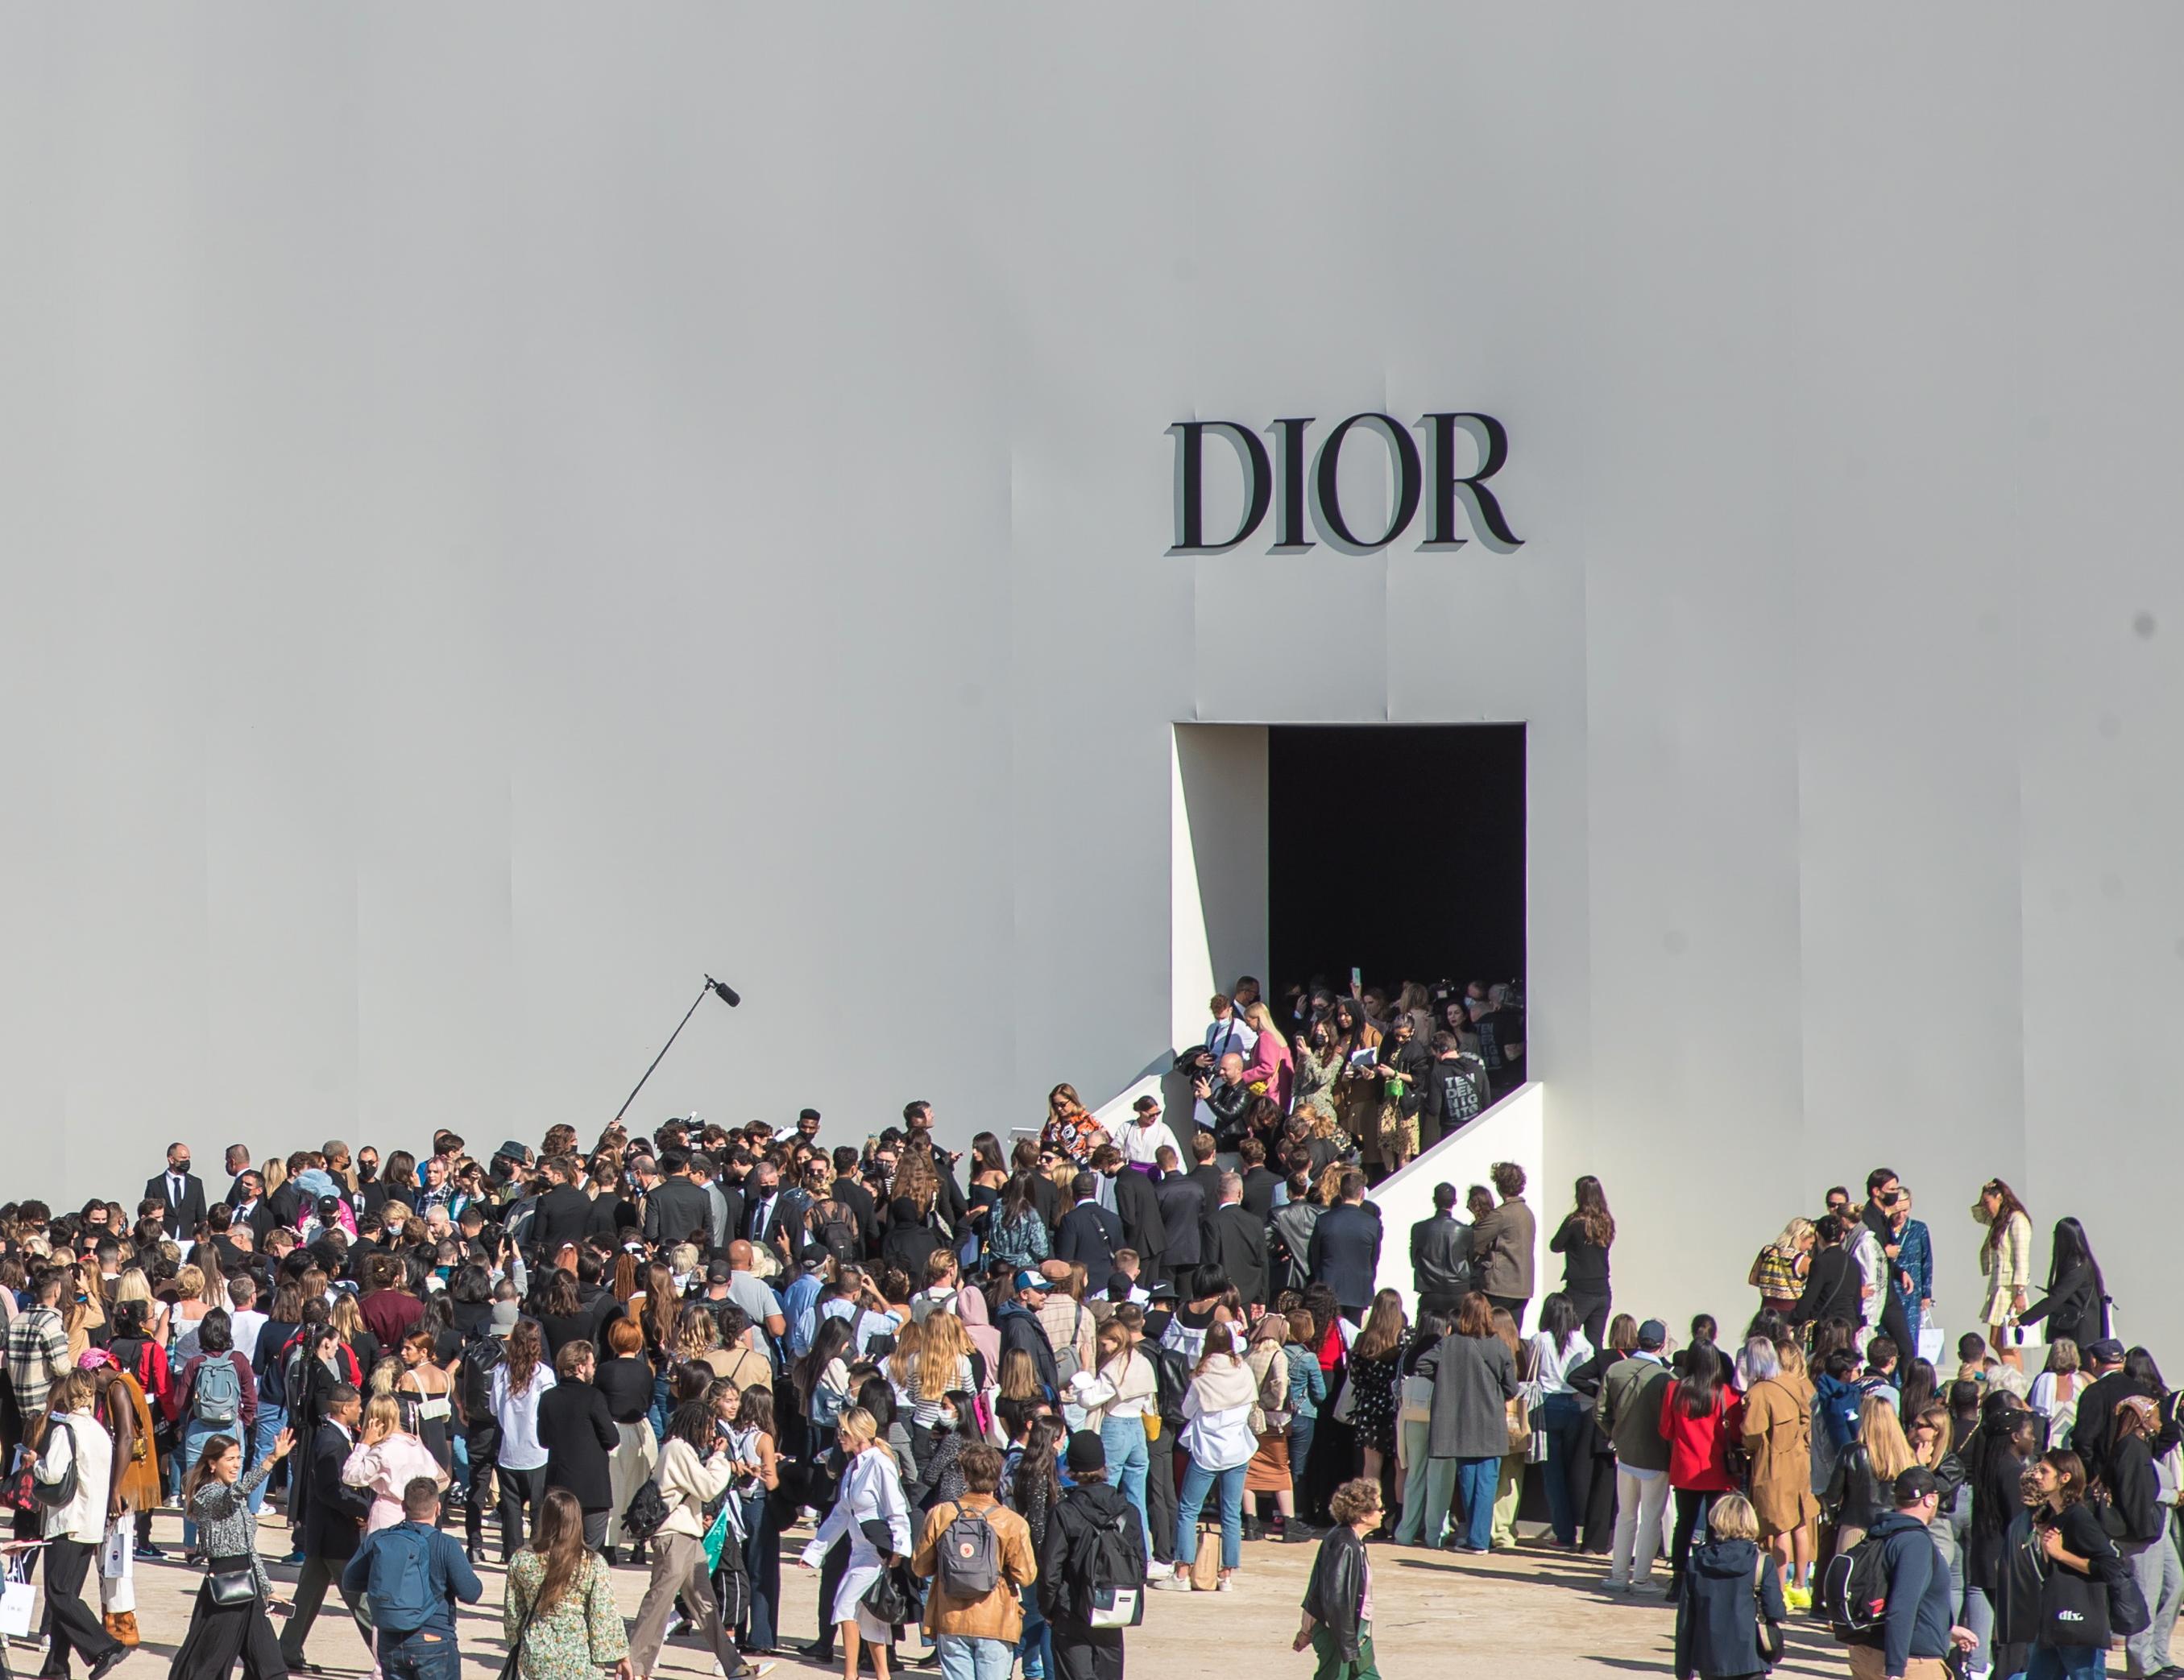 ANERKJENT: Dior ble grunnlagt i 1946 av den franske designeren Christian Dior. Visningene av deres nyeste kolleksjoner skaper alltid liv og røre i Paris. Her ser vi gjestene på vei inn i visningen deres fra 2021. 